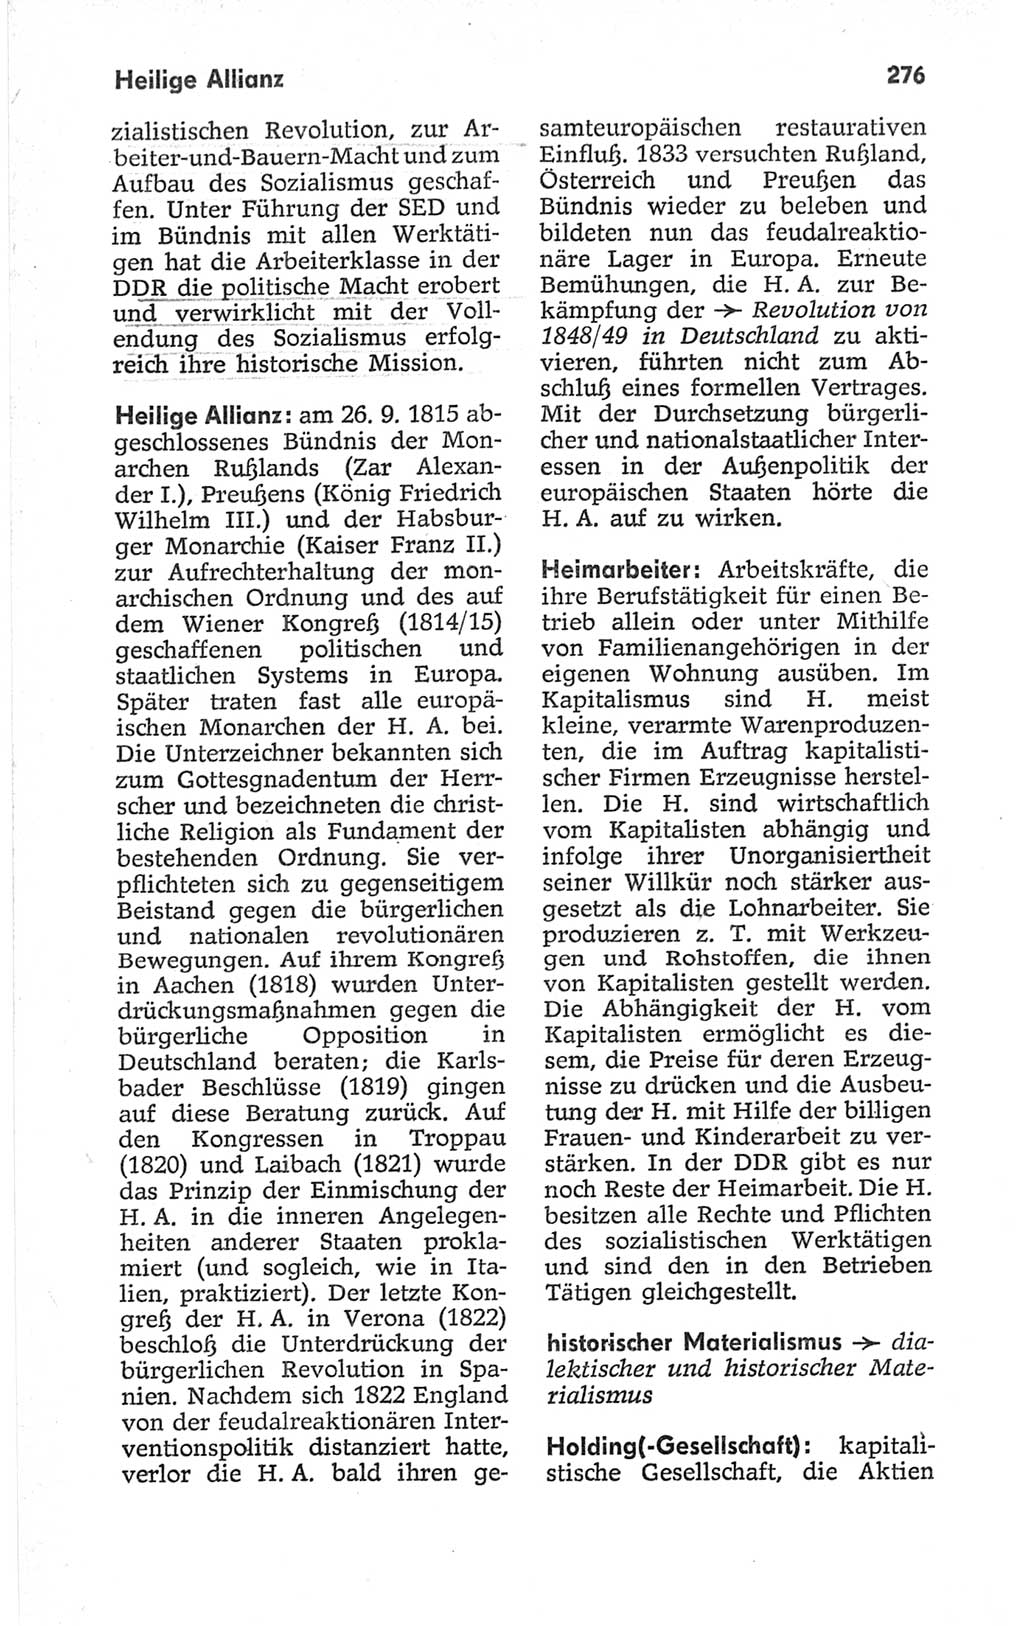 Kleines politisches Wörterbuch [Deutsche Demokratische Republik (DDR)] 1967, Seite 276 (Kl. pol. Wb. DDR 1967, S. 276)